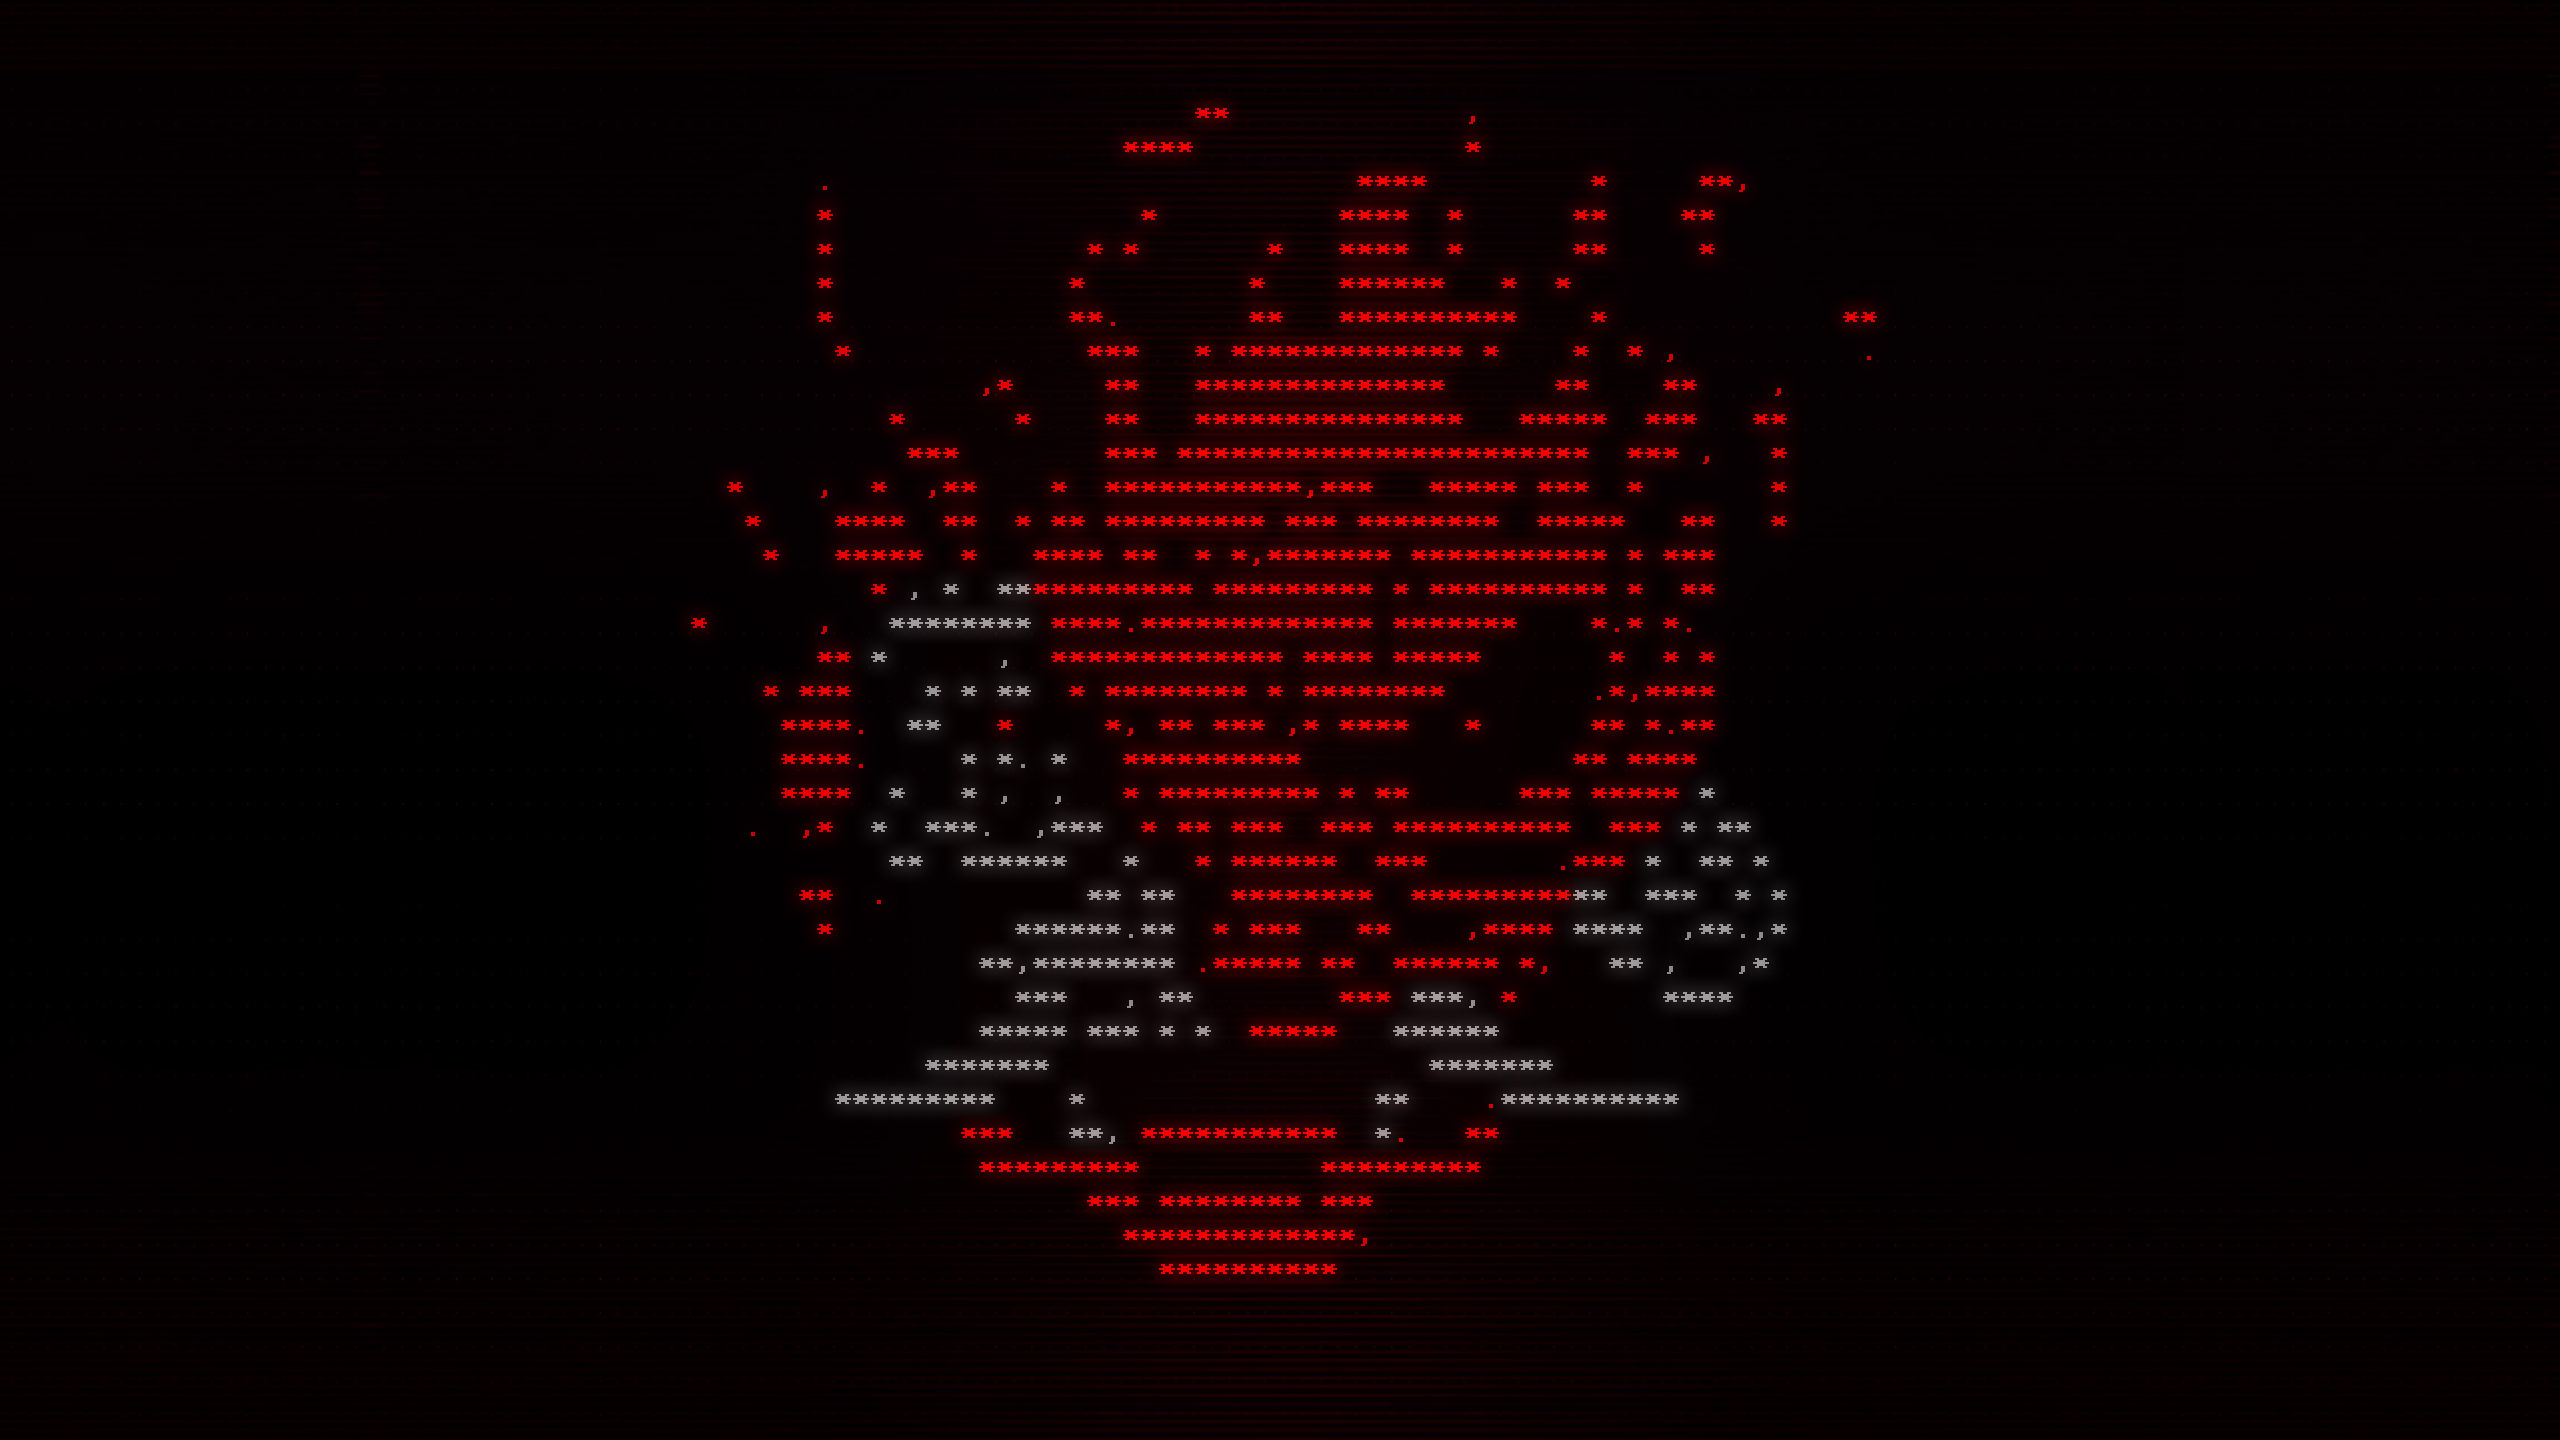 Samurai логотип cyberpunk фото 115